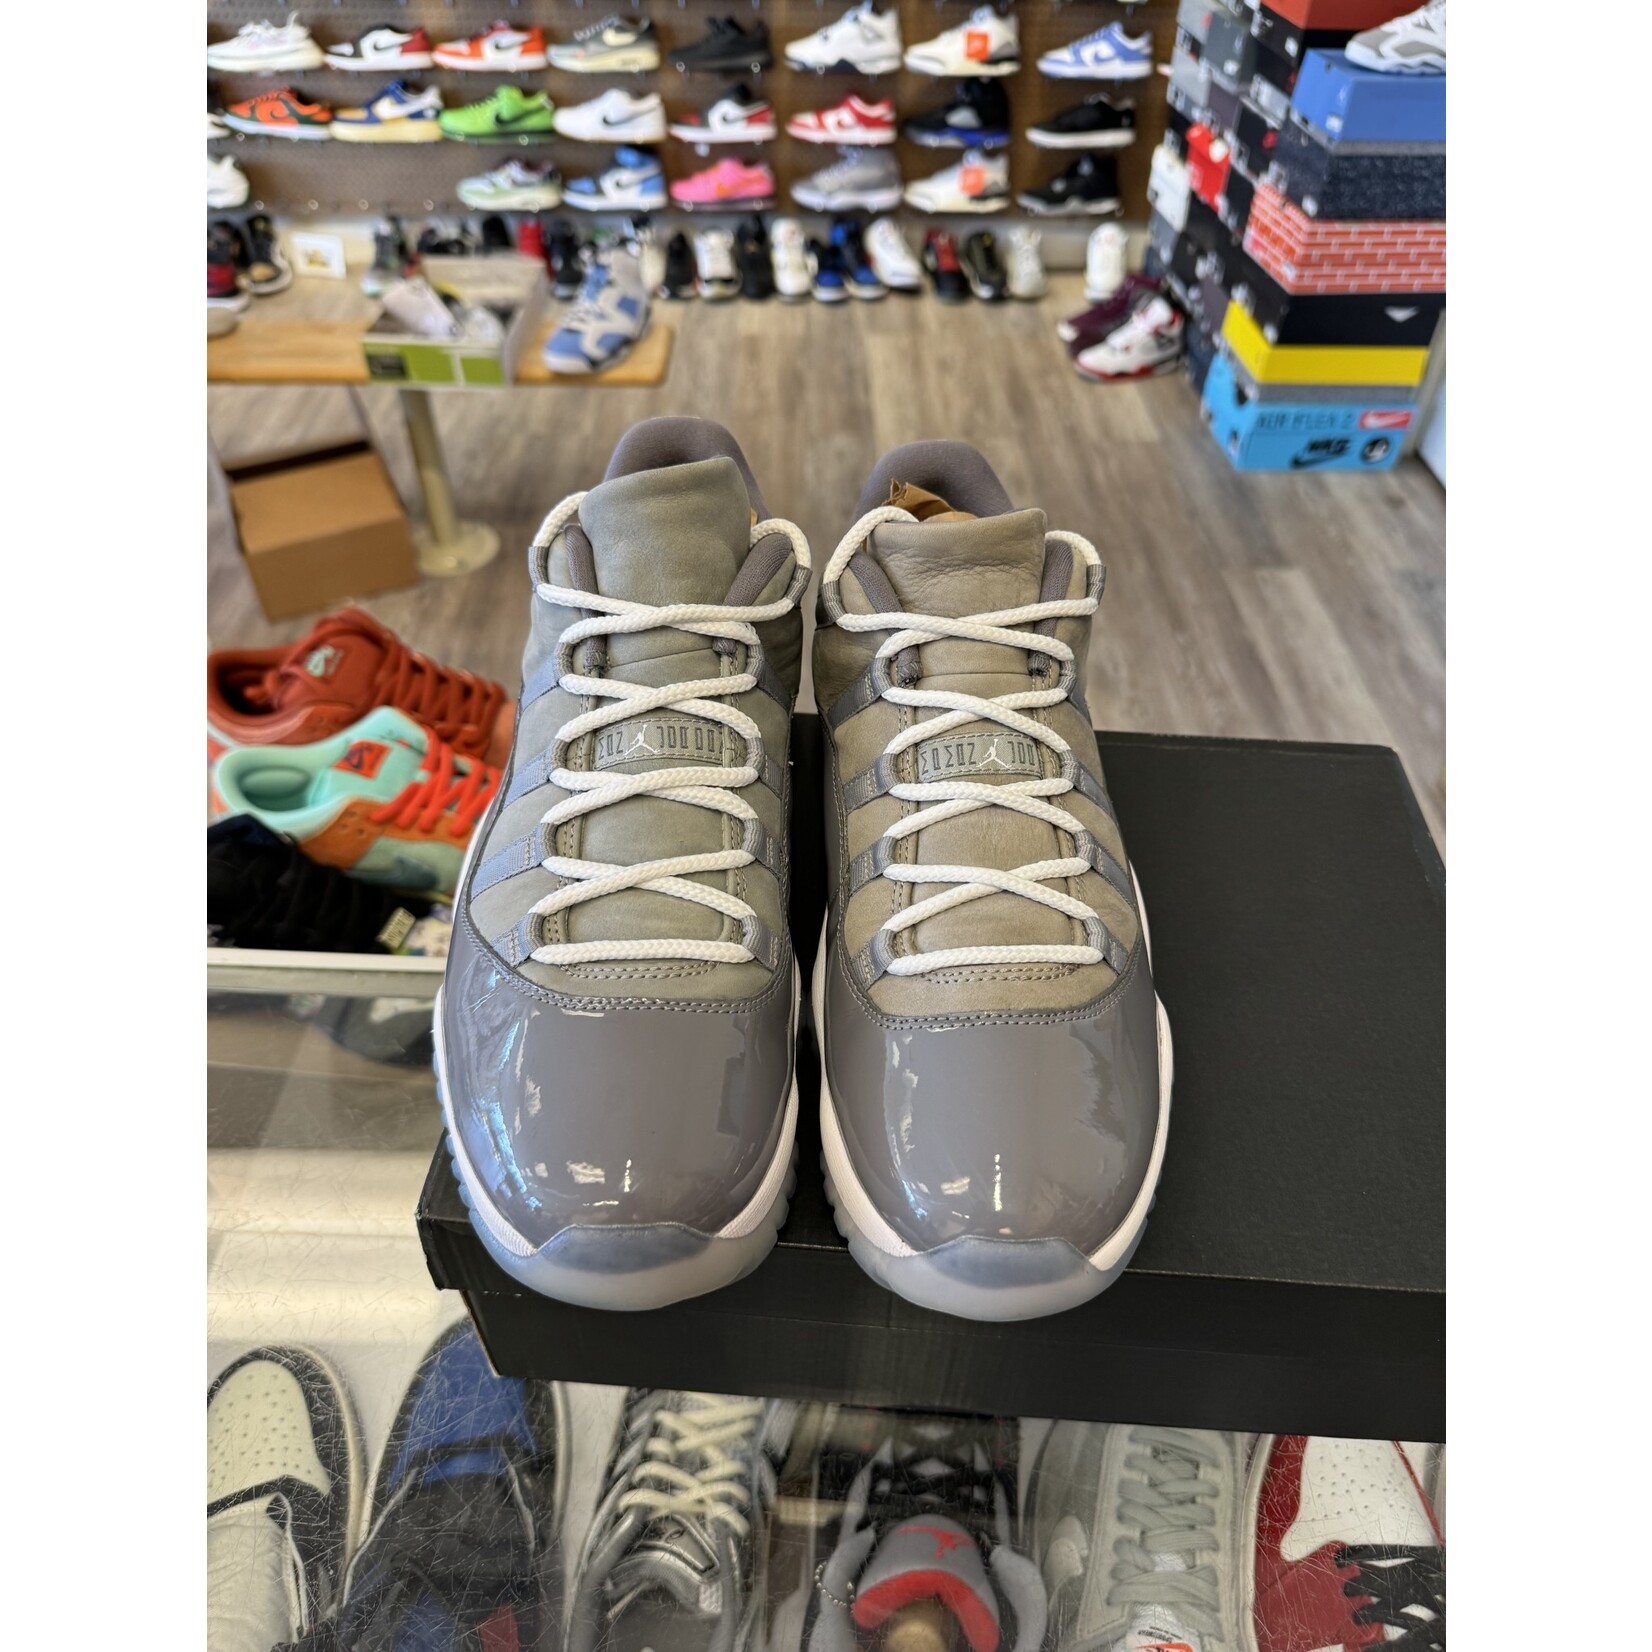 Jordan Jordan 11 Retro Low Cool Grey Size 11, PREOWNED